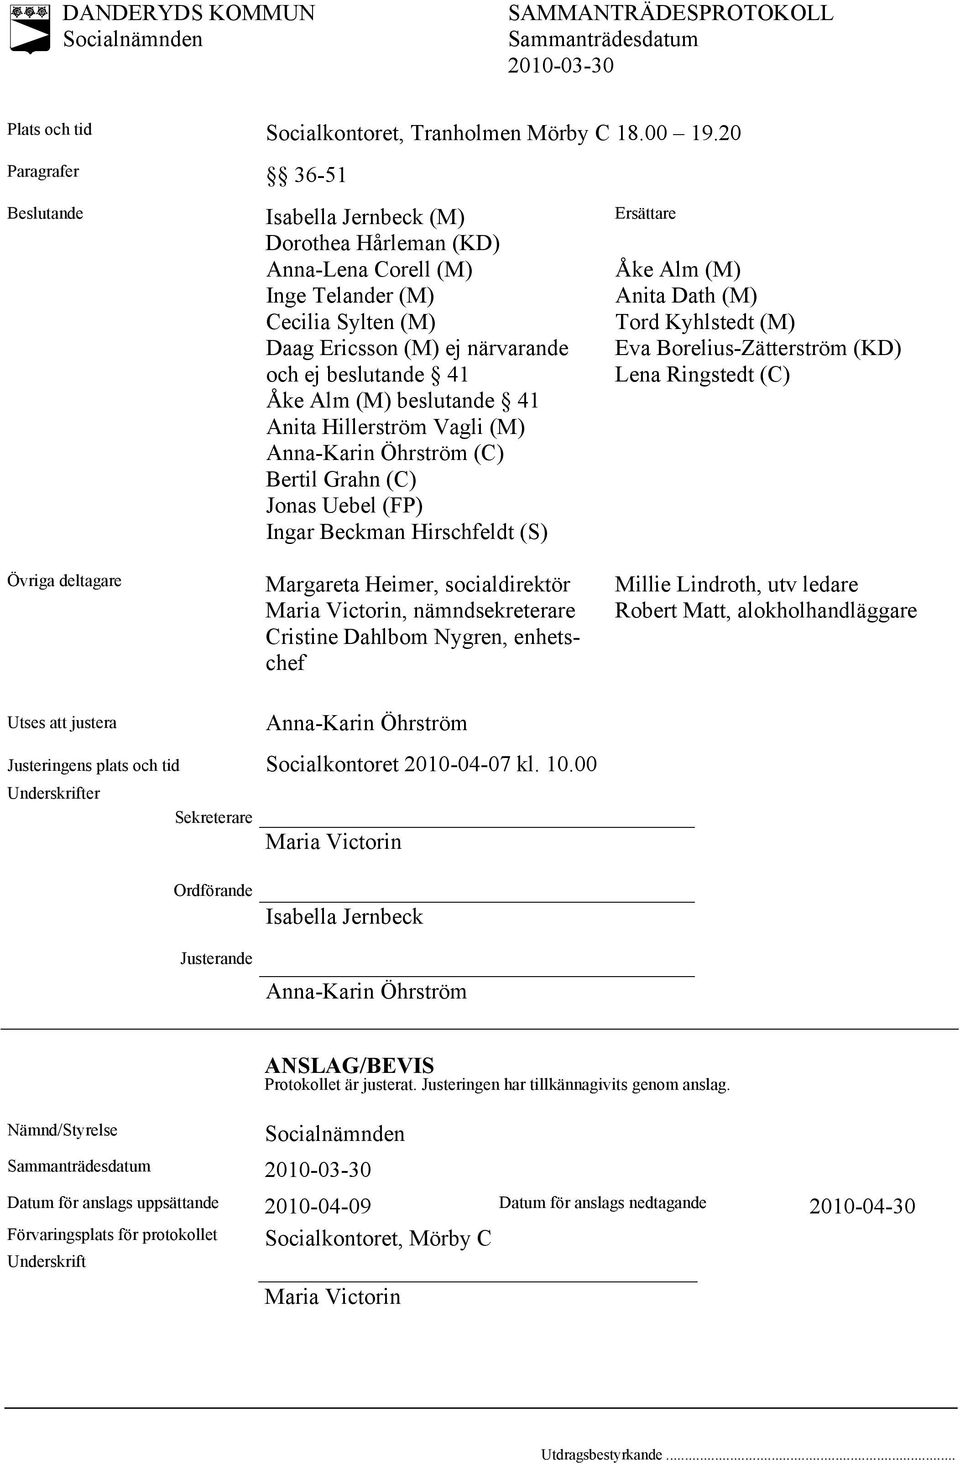 beslutande 41 Åke Alm (M) beslutande 41 Anita Hillerström Vagli (M) Anna-Karin Öhrström (C) Bertil Grahn (C) Jonas Uebel (FP) Ingar Beckman Hirschfeldt (S) Margareta Heimer, socialdirektör Maria